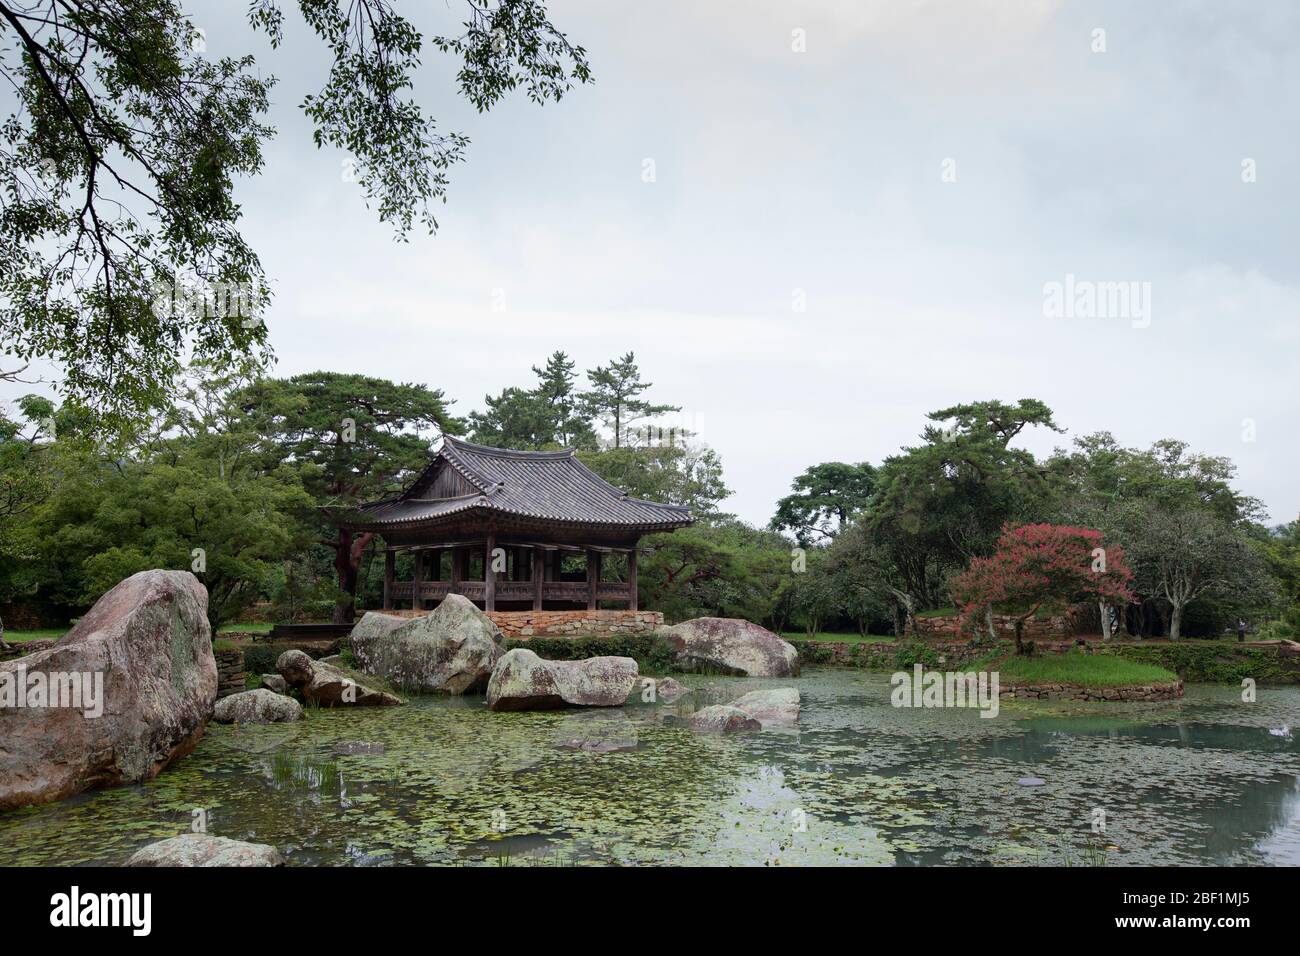 Traditional Korean pavilion Seyeonjeong in Bogildo island, Wando-gun, Korea - 28 Aug 2019 Stock Photo